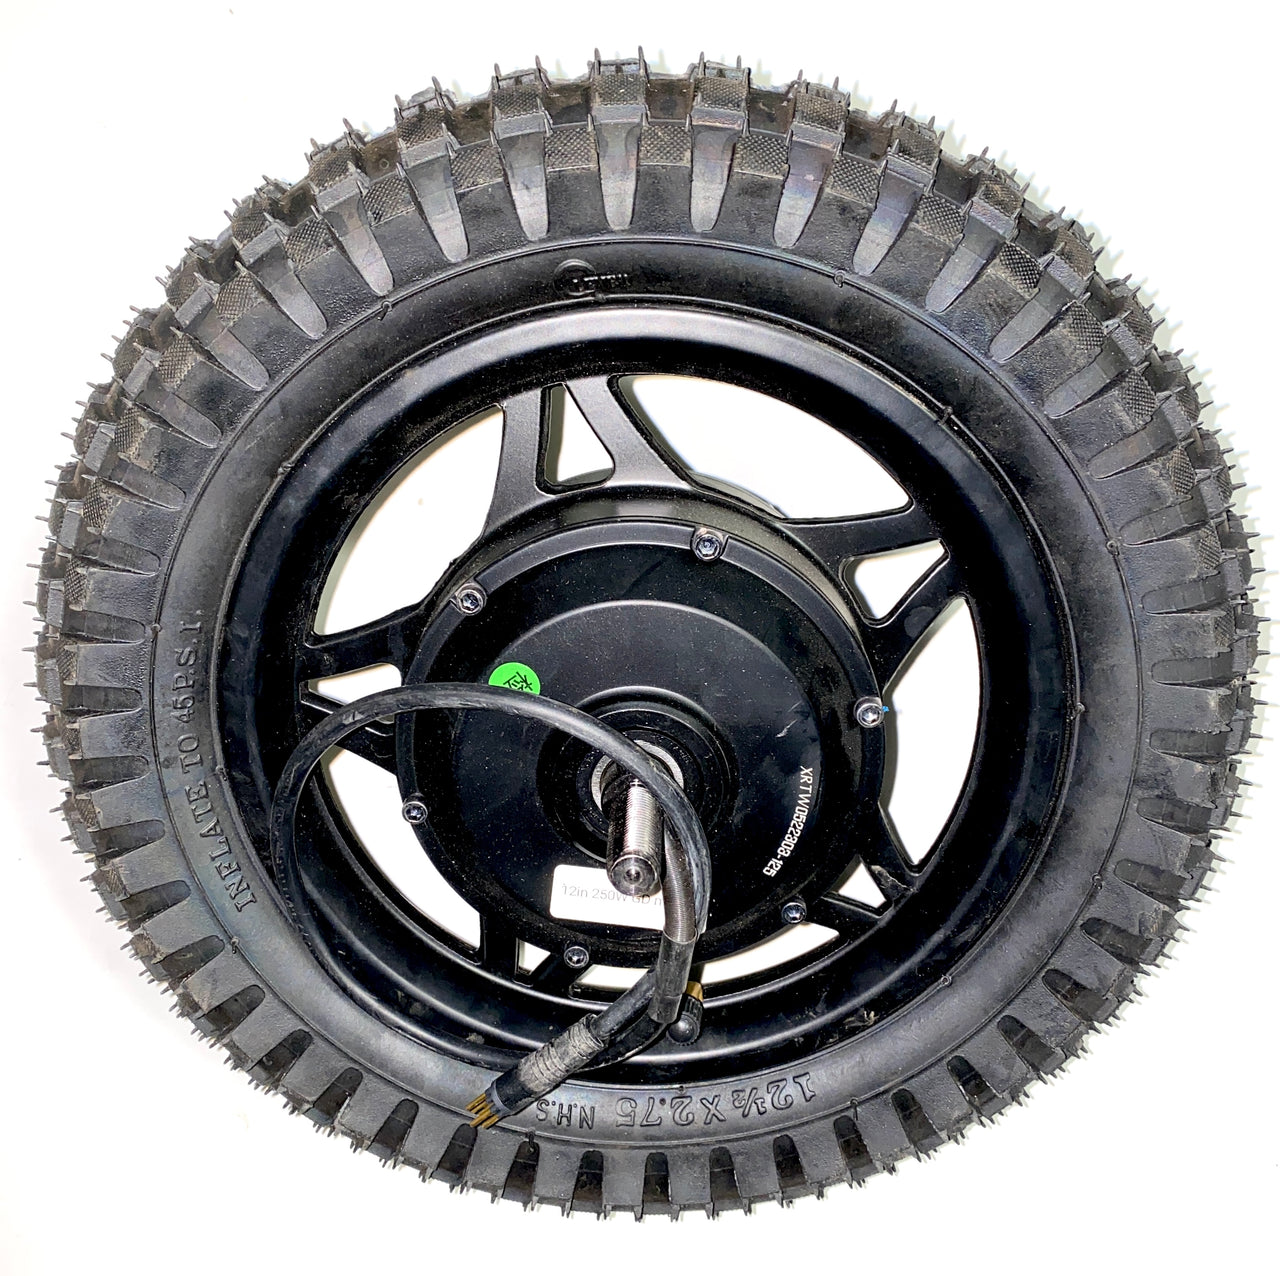 12" Rear Wheel, 36v/250W Gear Drive Hub Motor, Tube, and Tire Assembly | P12-203